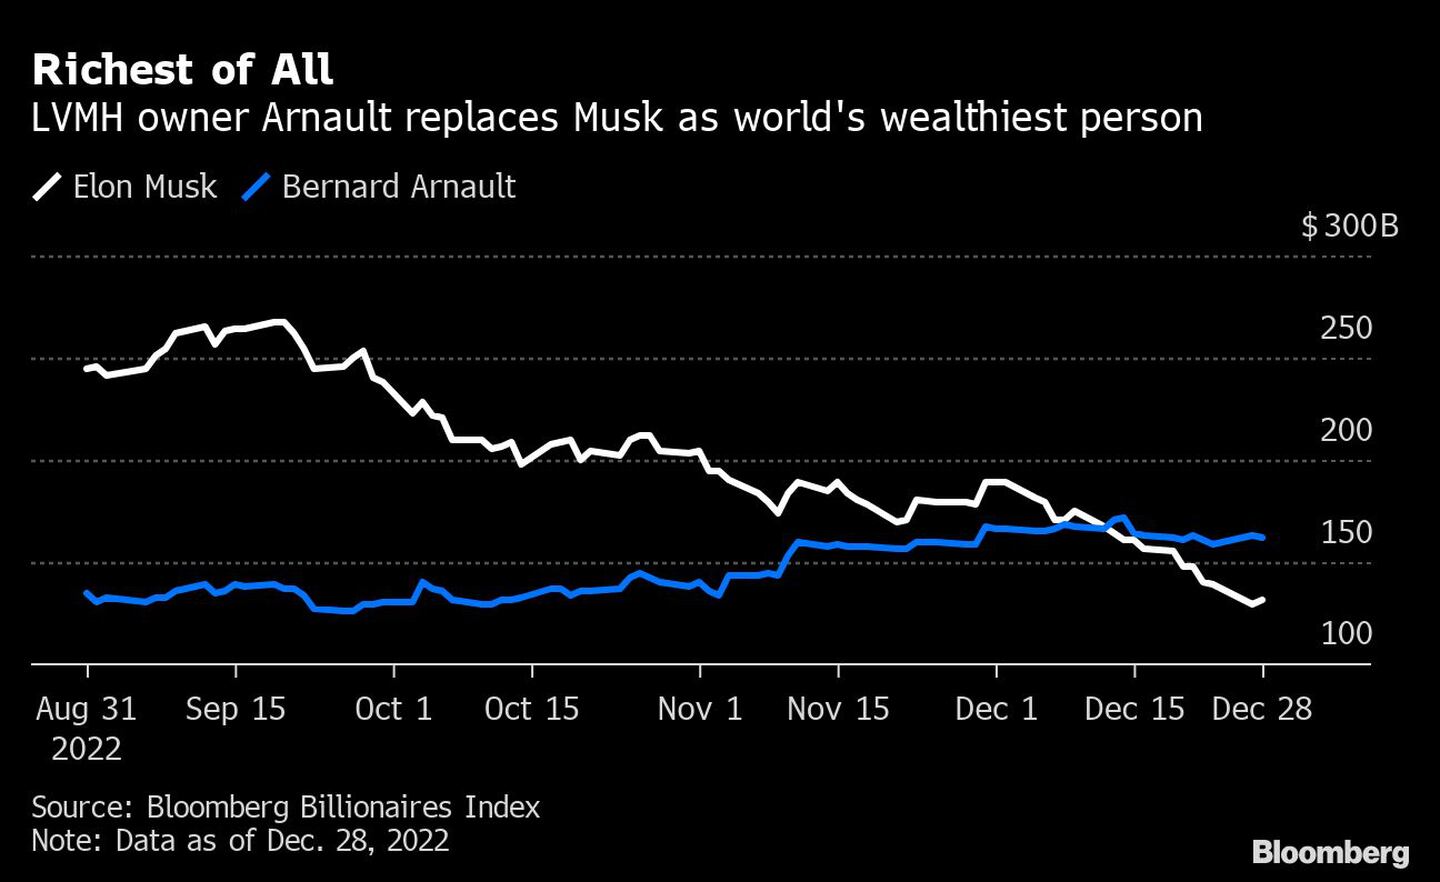  Arnault, propietario de LVMH, sustituye a Musk como la persona más rica del mundodfd